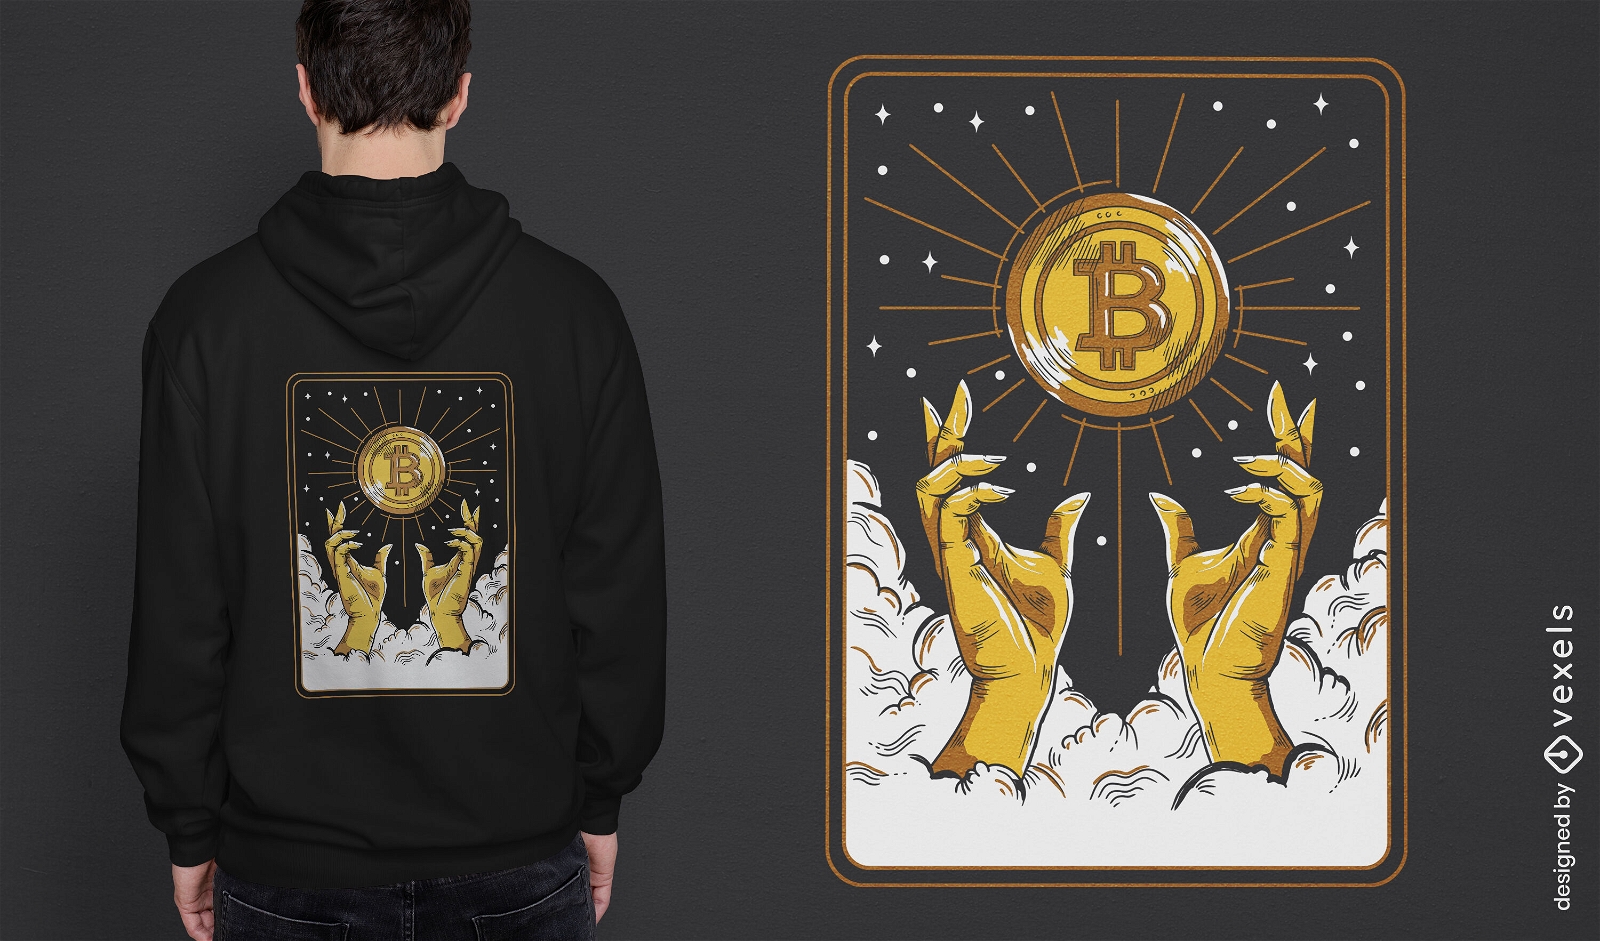 Crypto symbol tarot card t-shirt design